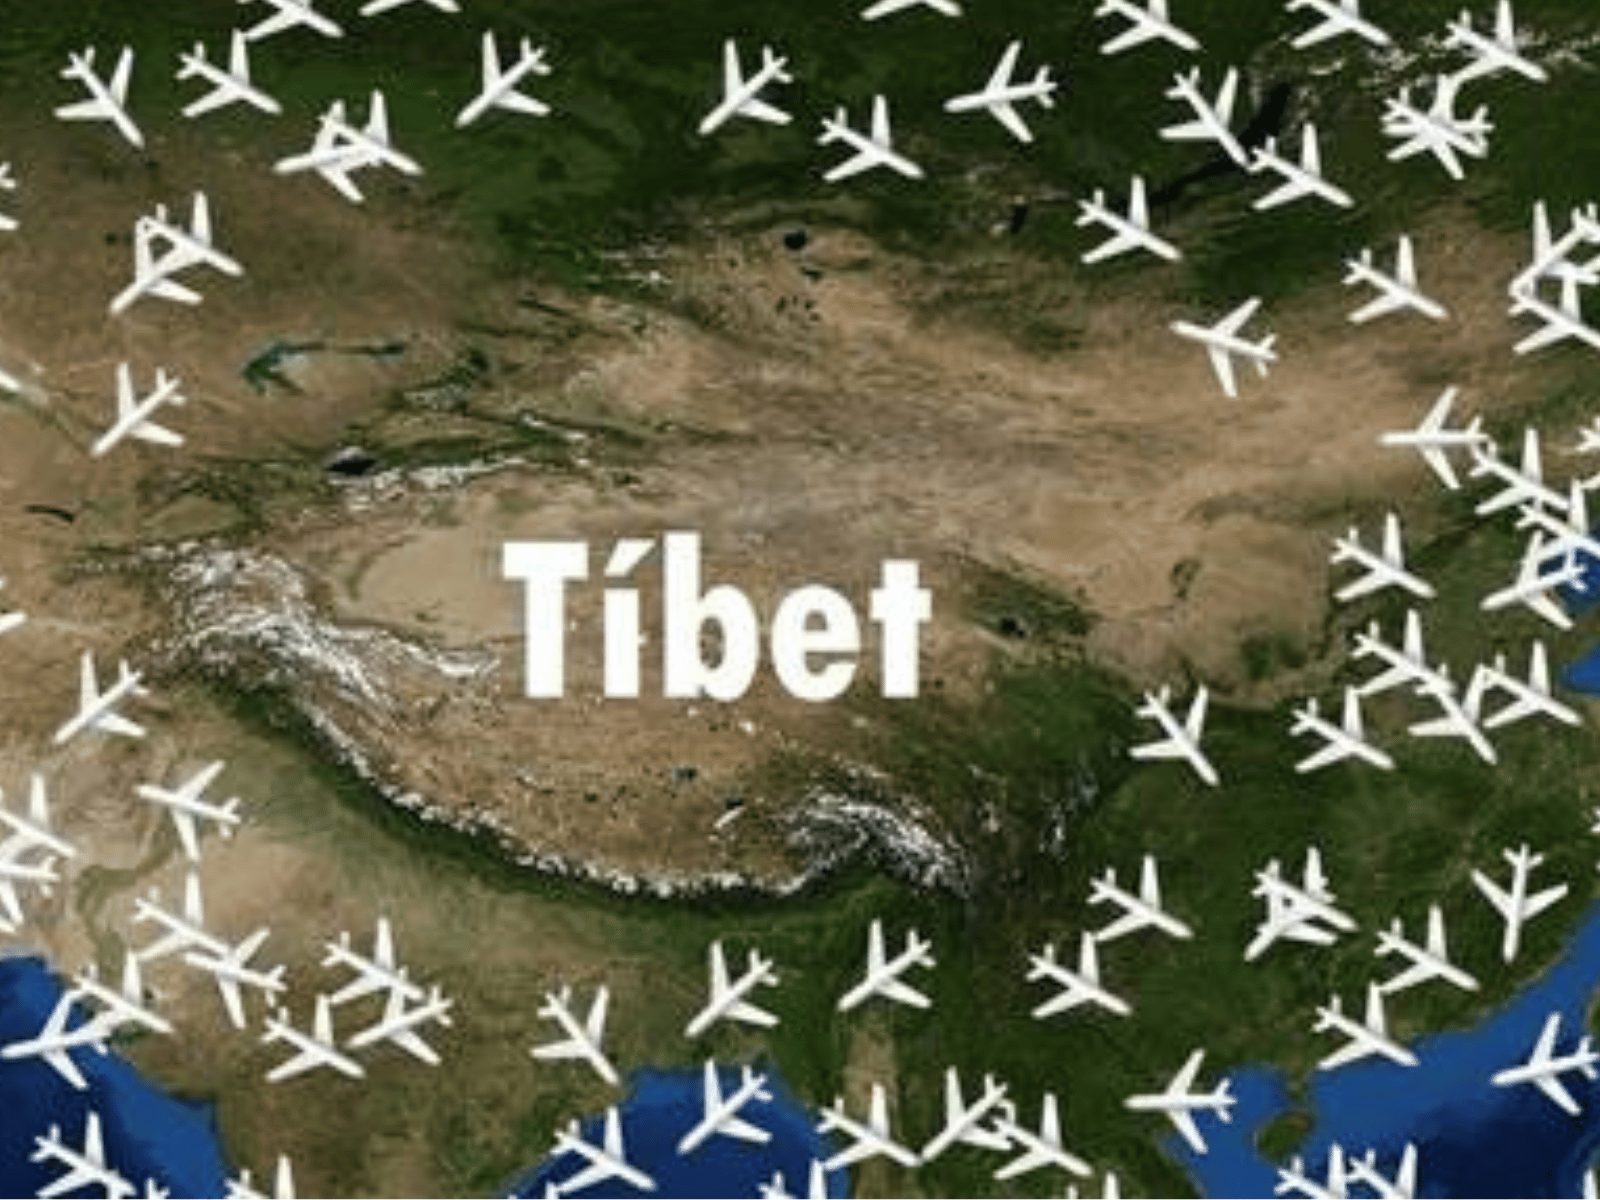 Alturas prohibidas: descubre por qué los aviones evitan el desafío del Tíbet - Air Horizont